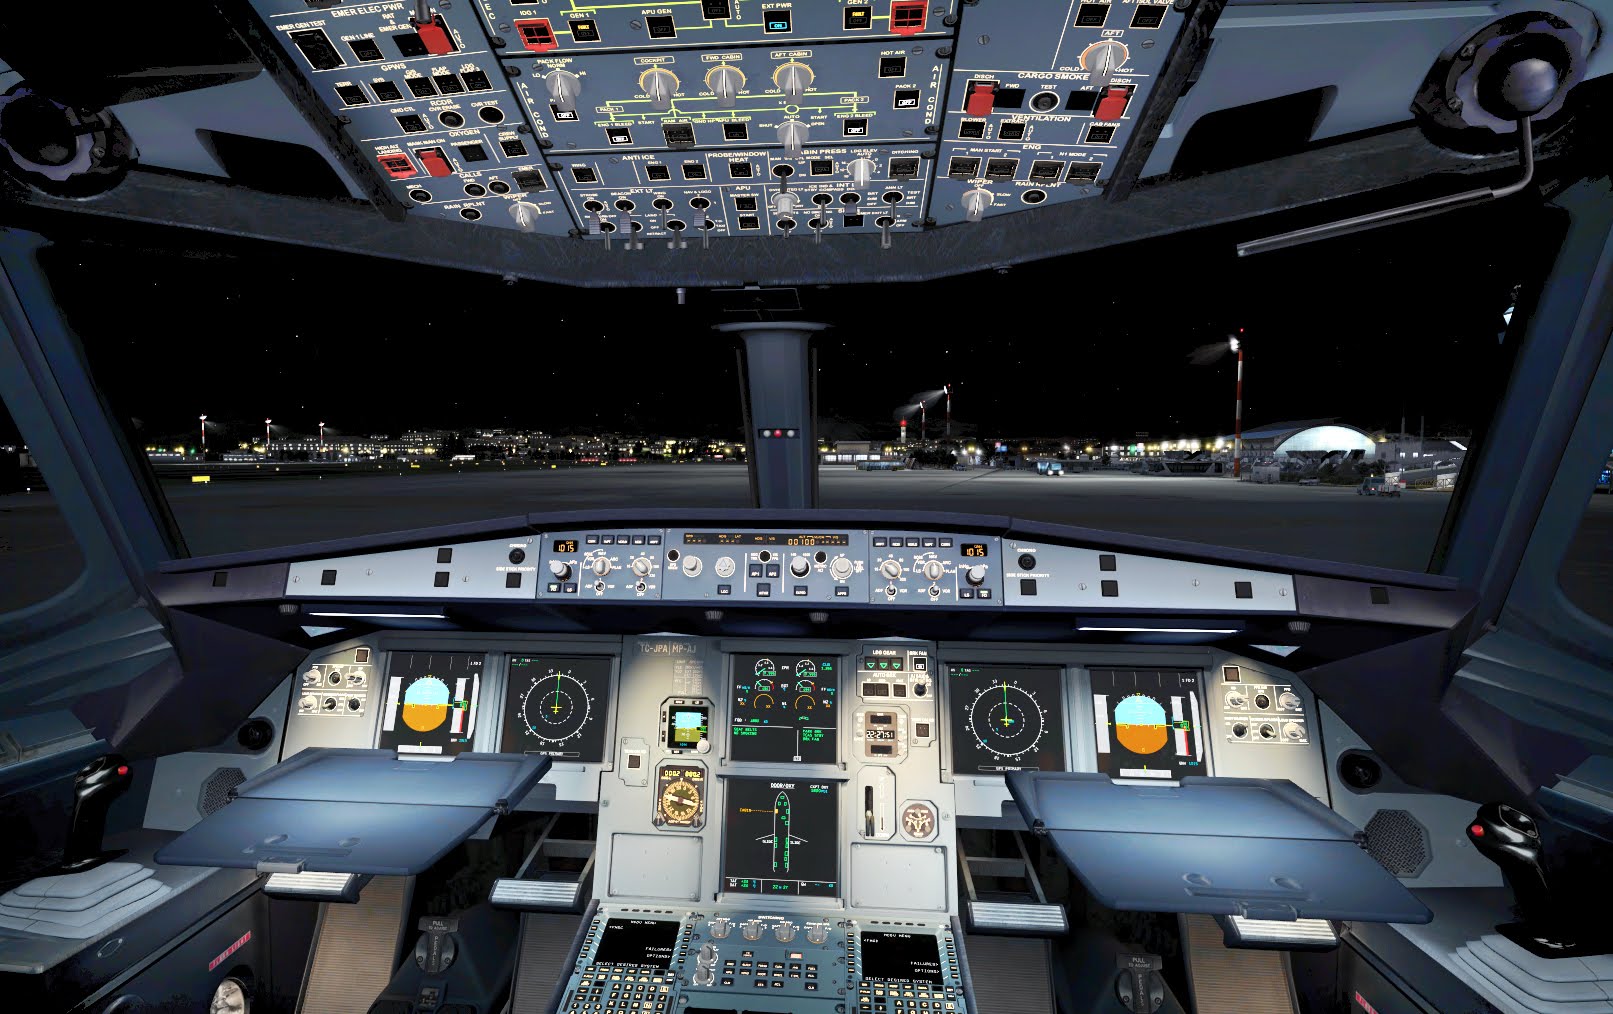 Utviklerne av utvidelser til Flight Simulator X har blitt tatt i å stjele brukernavn og passord lagret i Chrome sin passordbehandler.